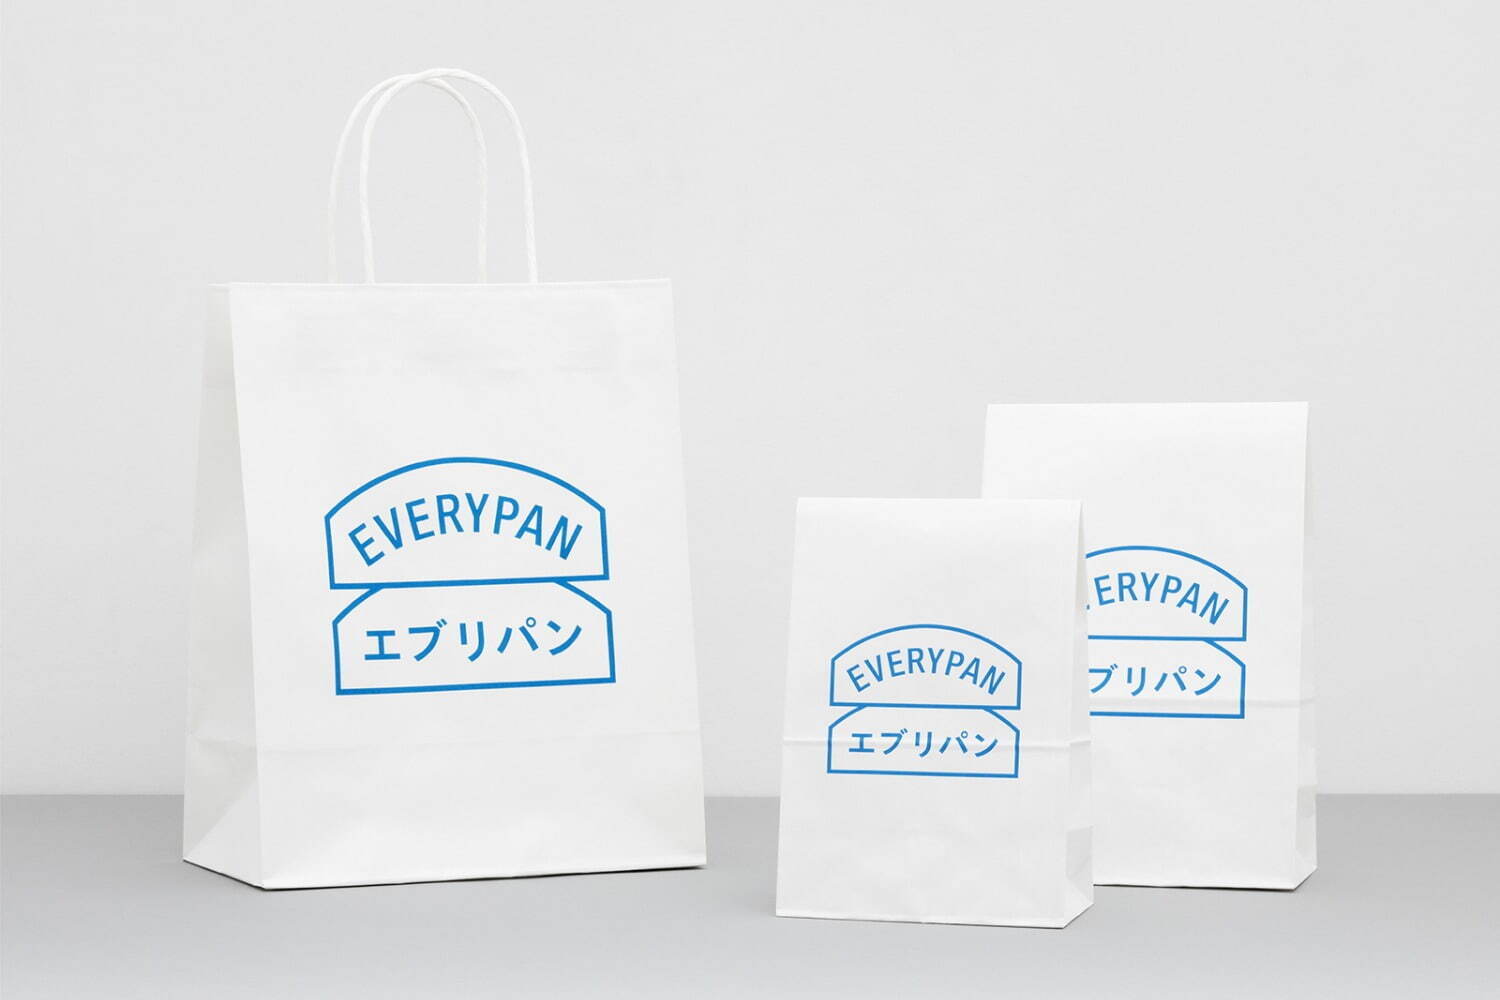 ベーカリーカフェのパッケージデザイン「エブリパン」
(菊地敦己 cl: ジンズ)